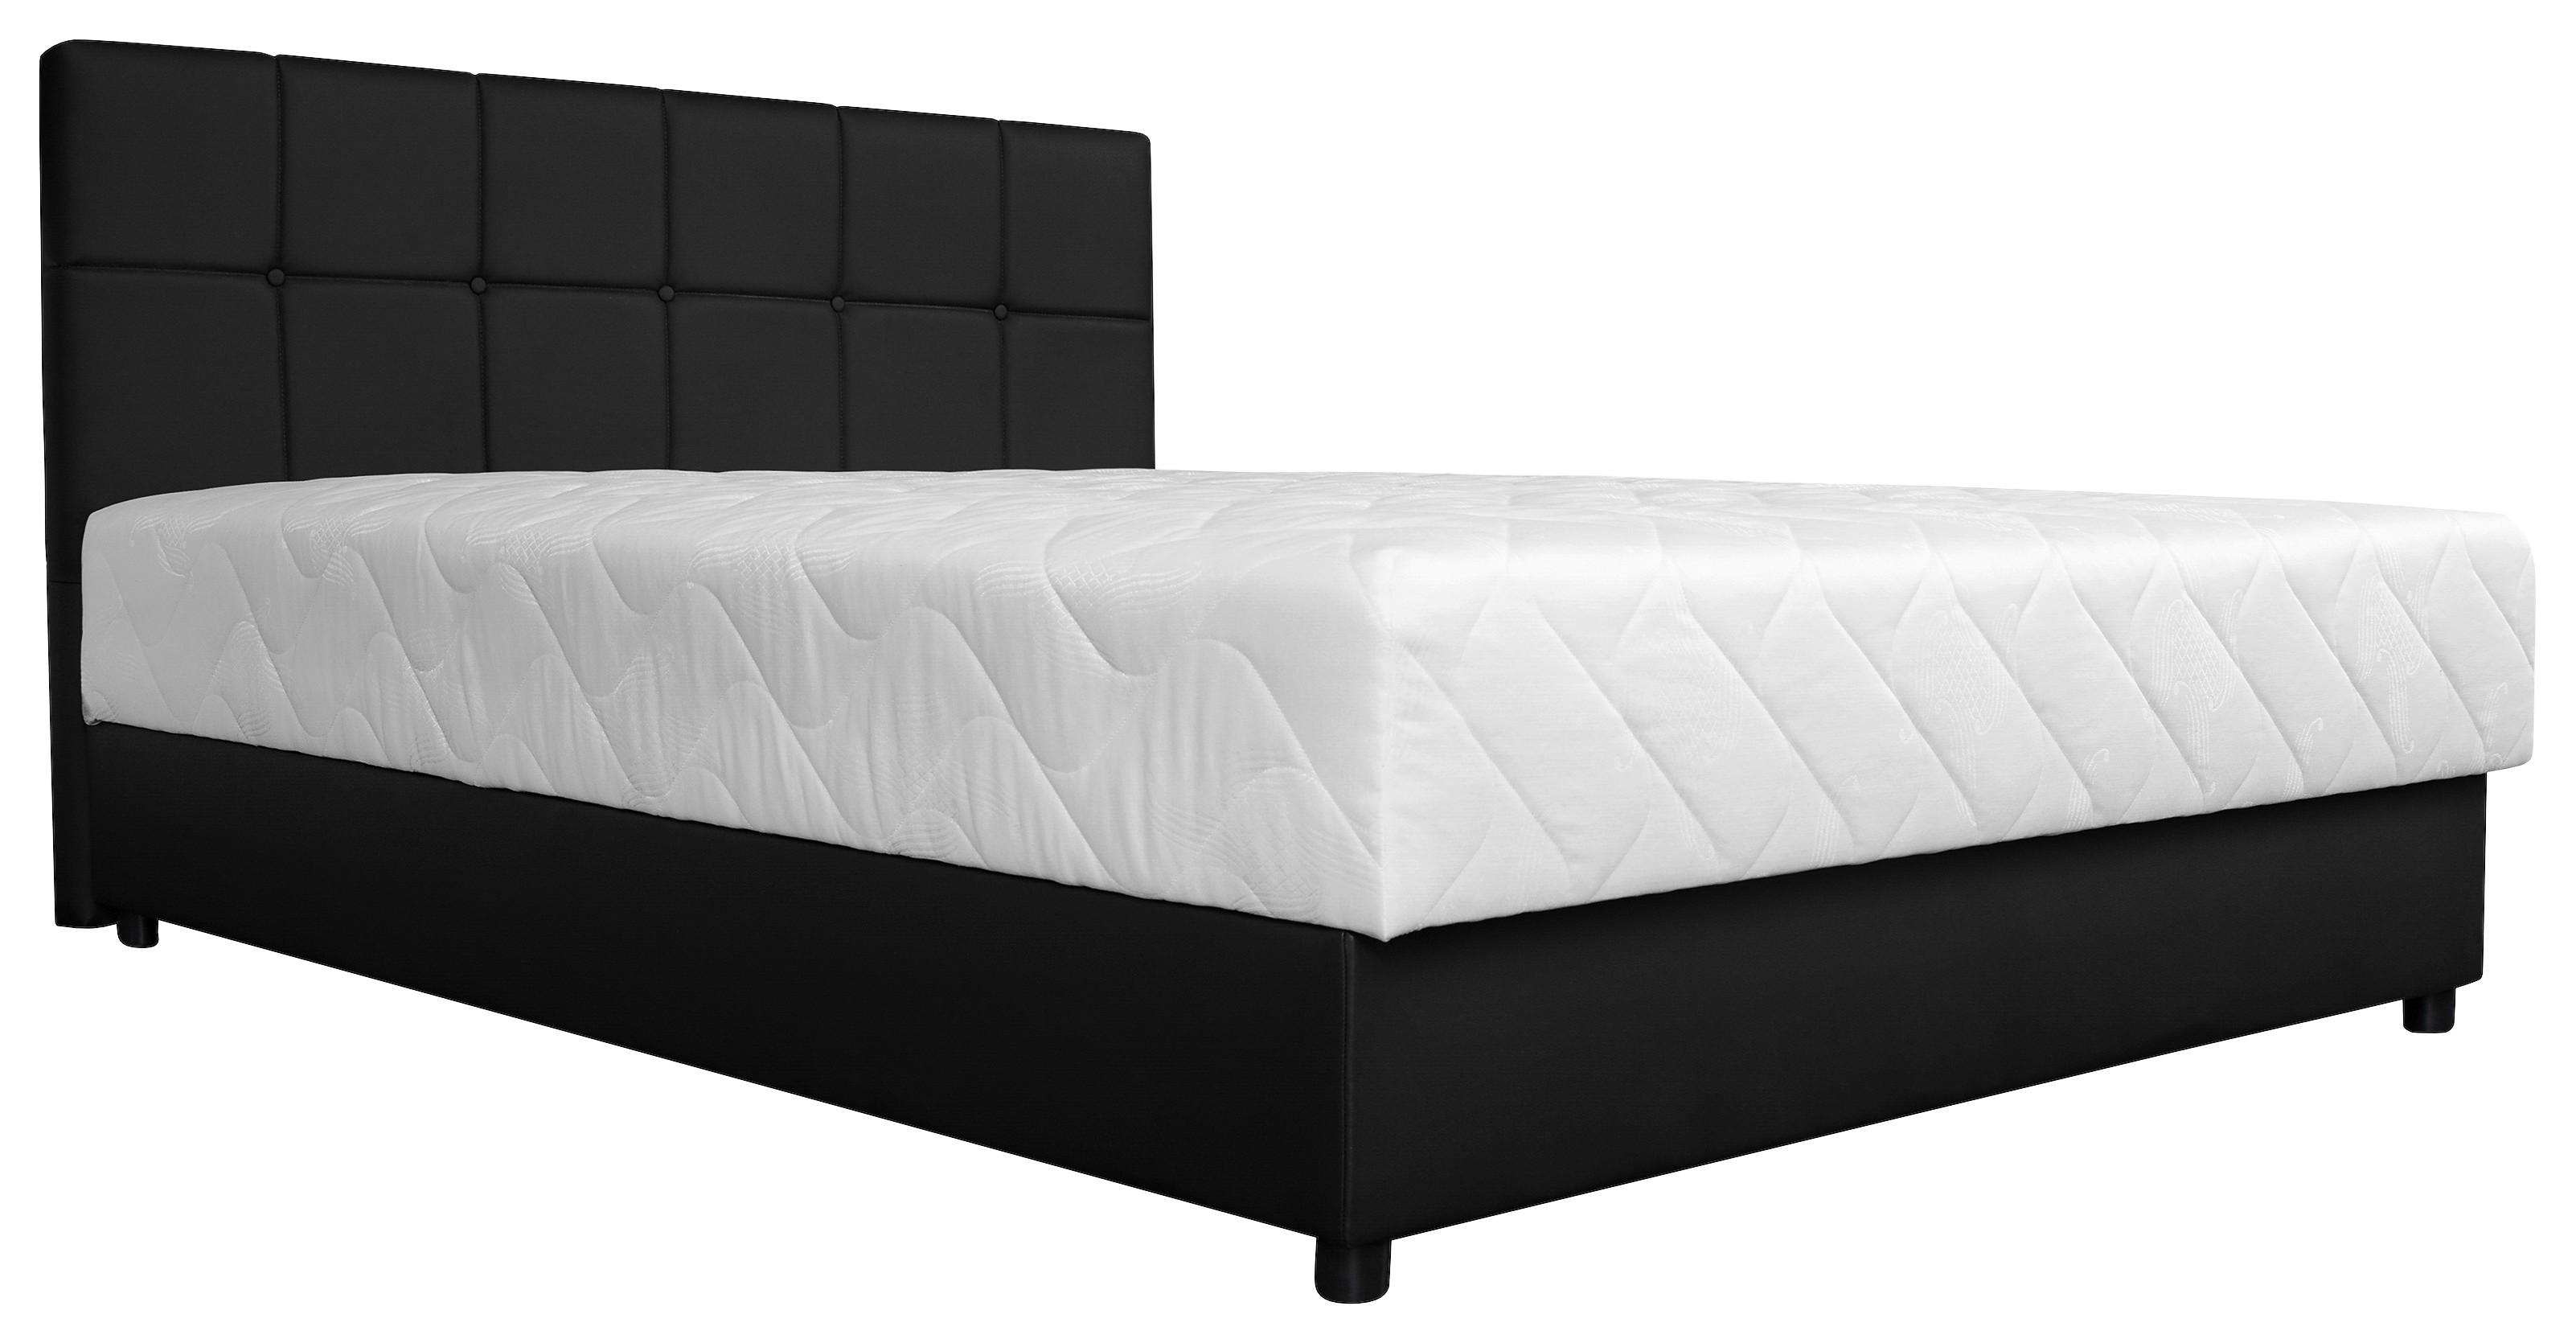 Oblazinjena Postelja Super Soft, Črna, 150x200 - črna/siva, Moderno, tekstil/leseni material (150/100/210cm) - Modern Living